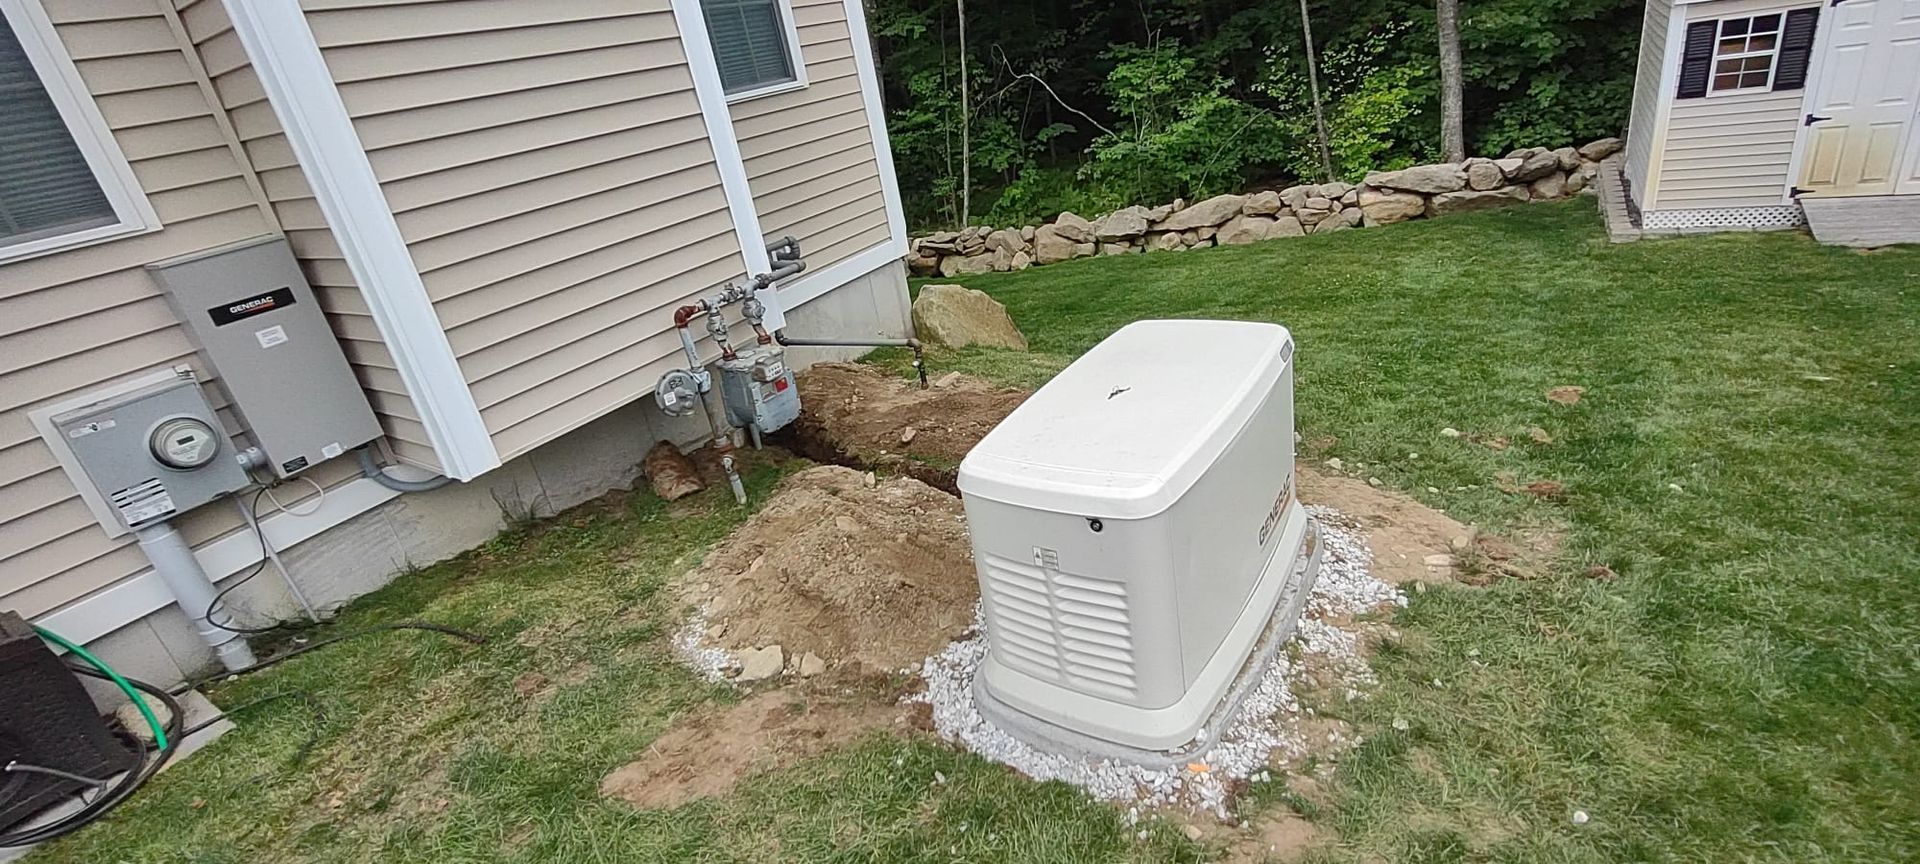 Residential generator — Hopedale, Massachusetts — DR Electric